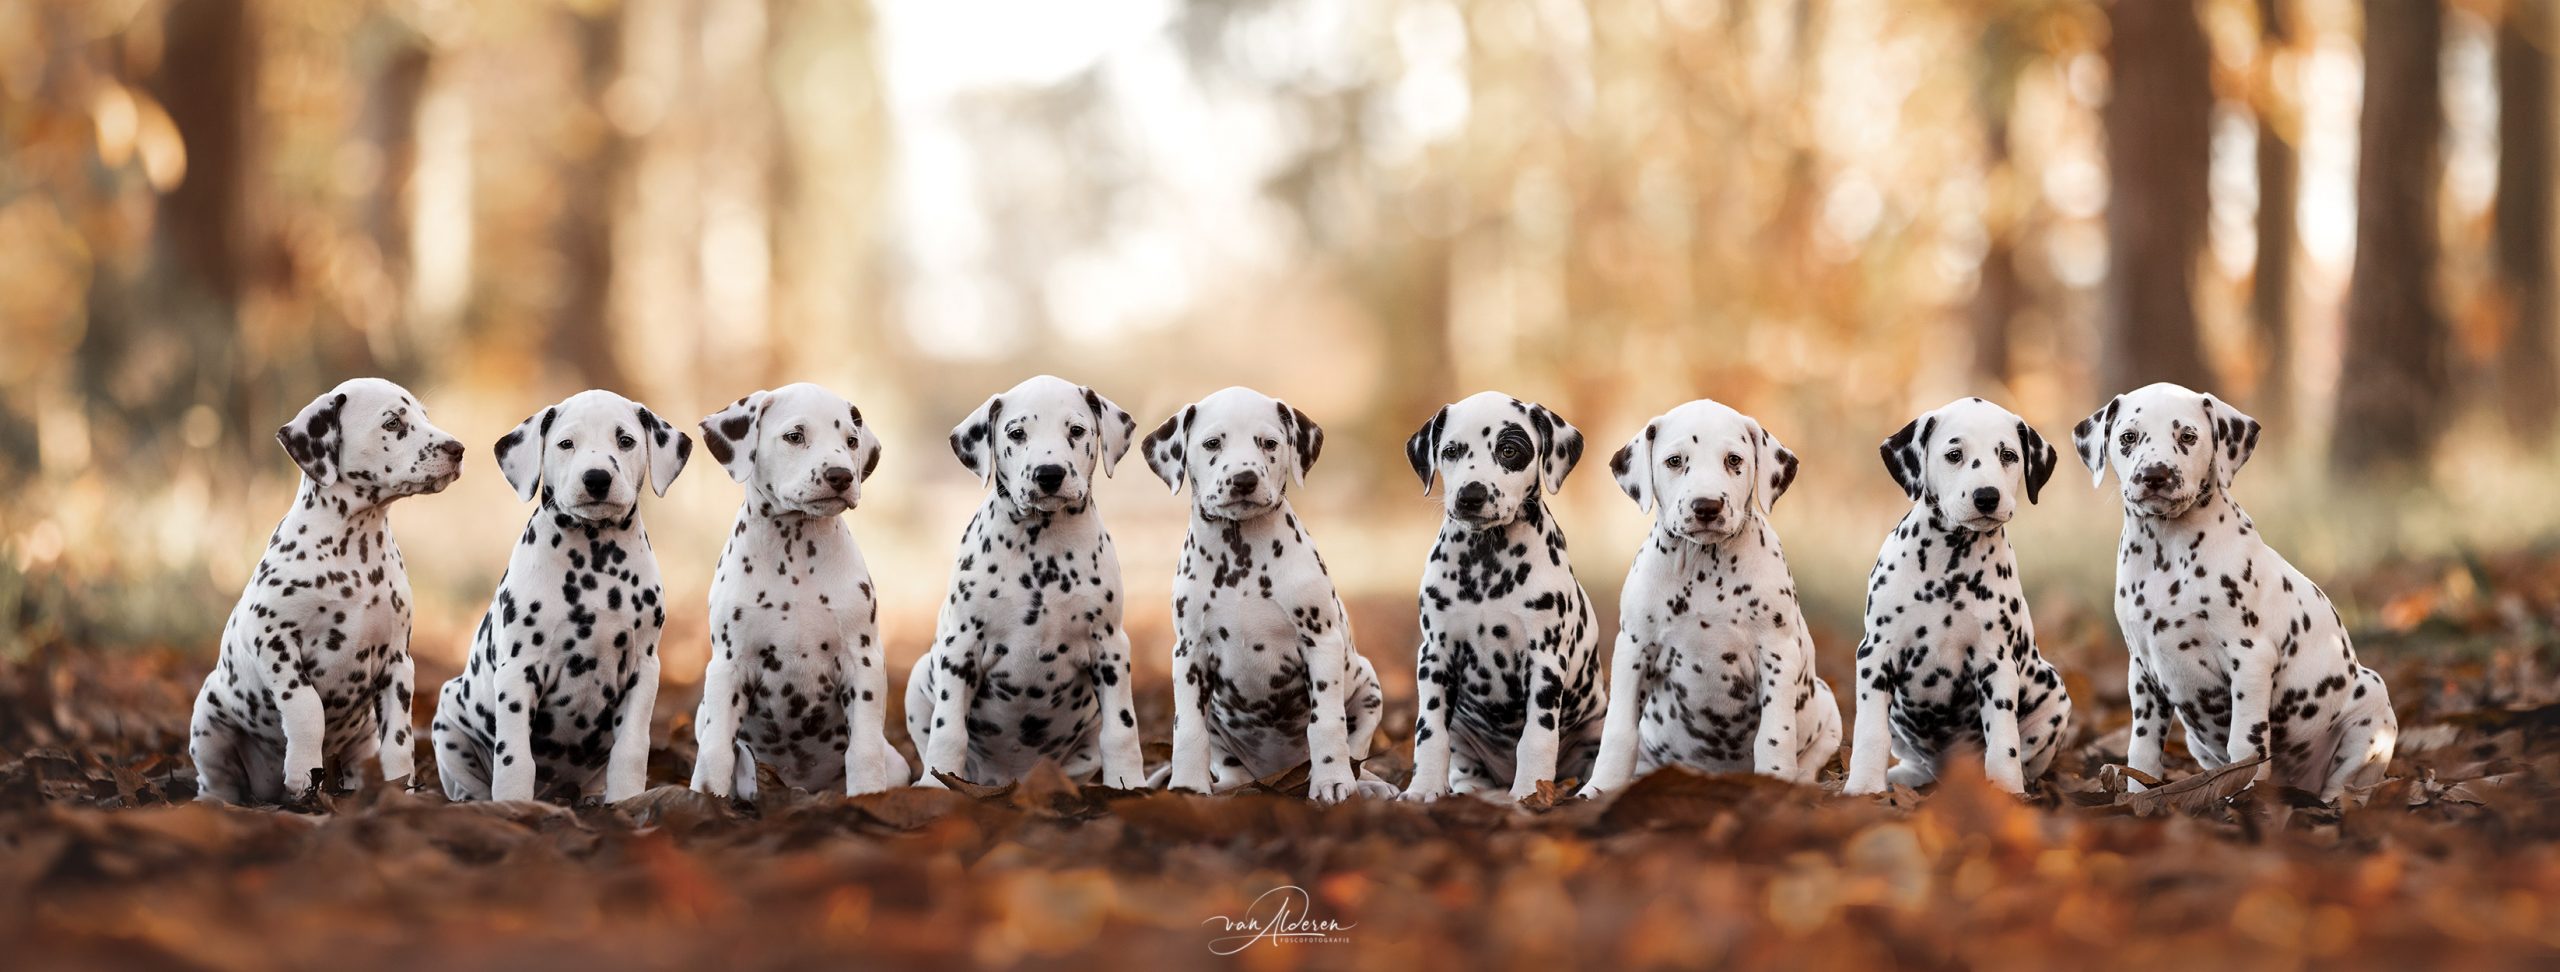 Dalmatier puppy's nest honden fotografie